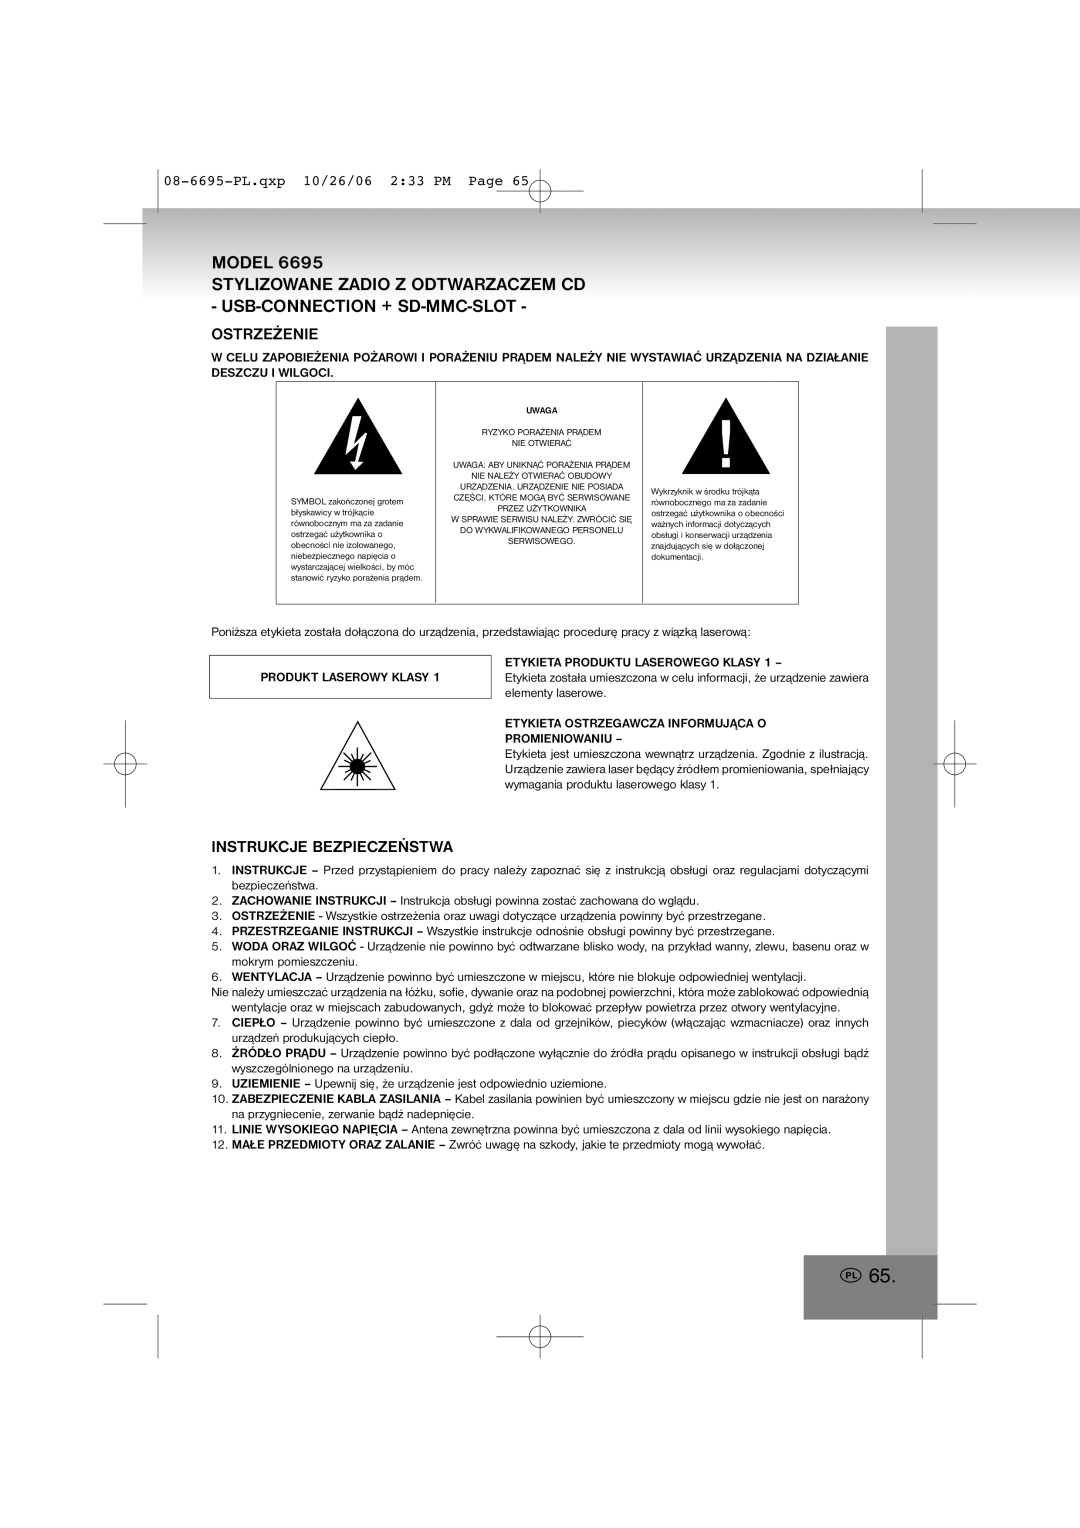 Elta manual Ostrzeżenie, Instrukcje Bezpieczeństwa, 08-6695-PL.qxp10/26/06 2 33 PM Page, Model 